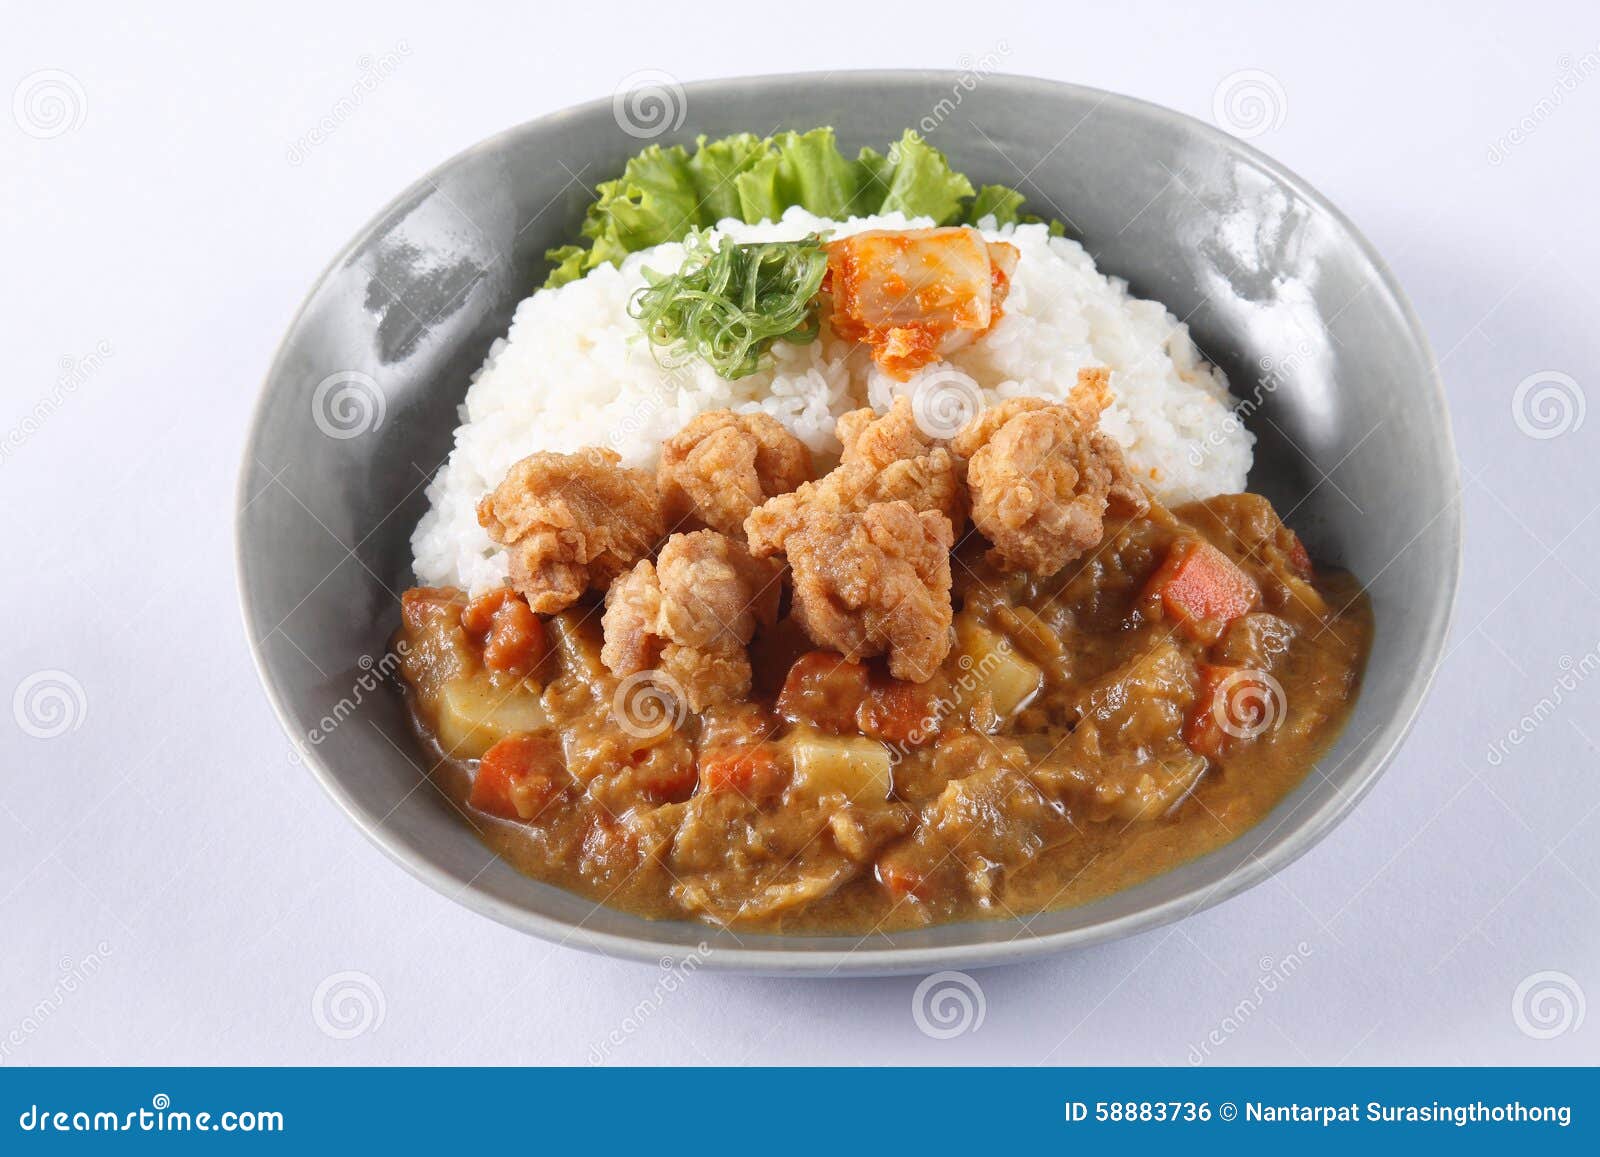 【日式咖喱饭】一个锅子搞定，日系人妻必备_哔哩哔哩_bilibili